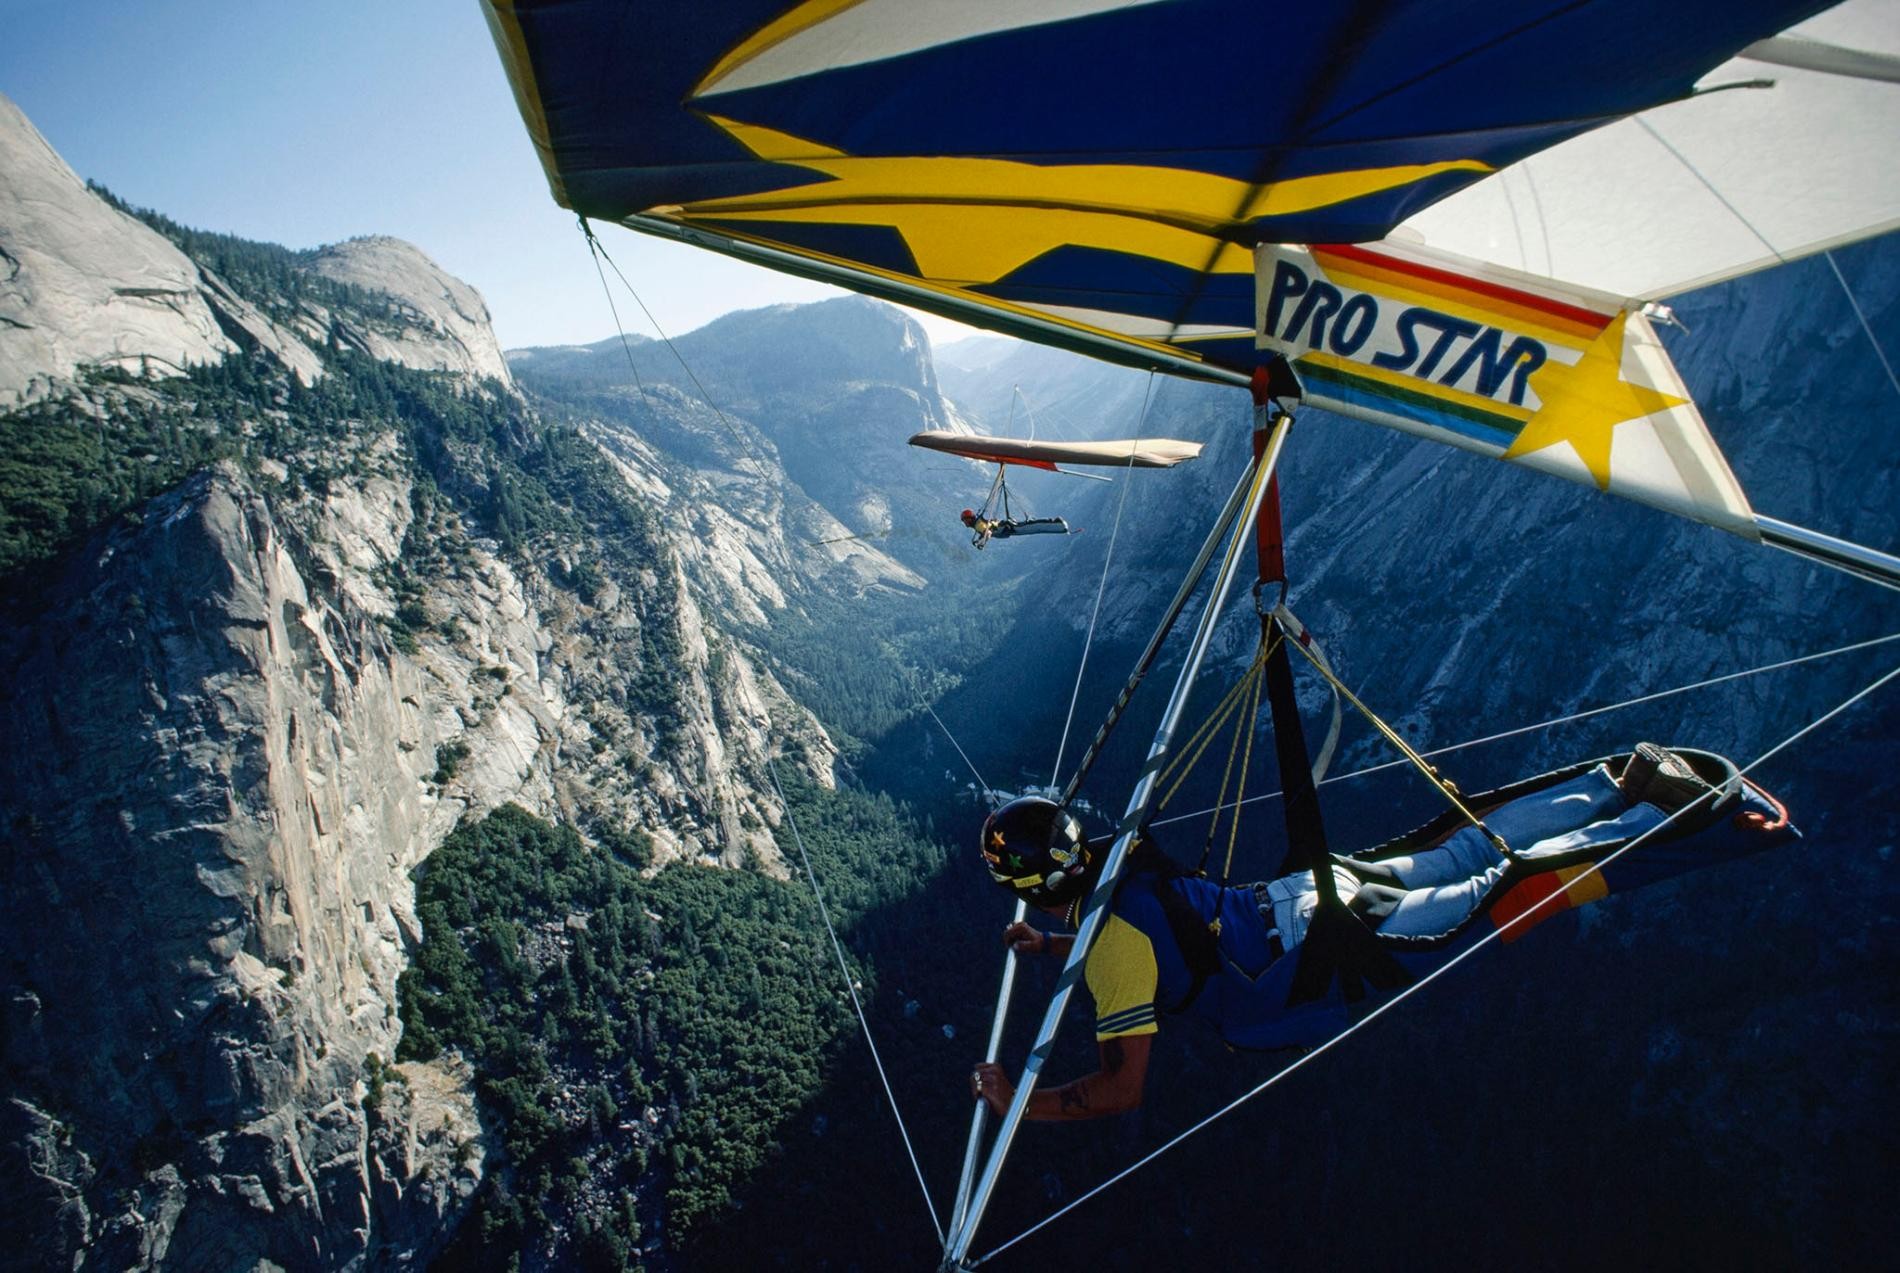 Дельтапланы над Йосемитской долиной, 1985. Фотограф Джонатан Блэр